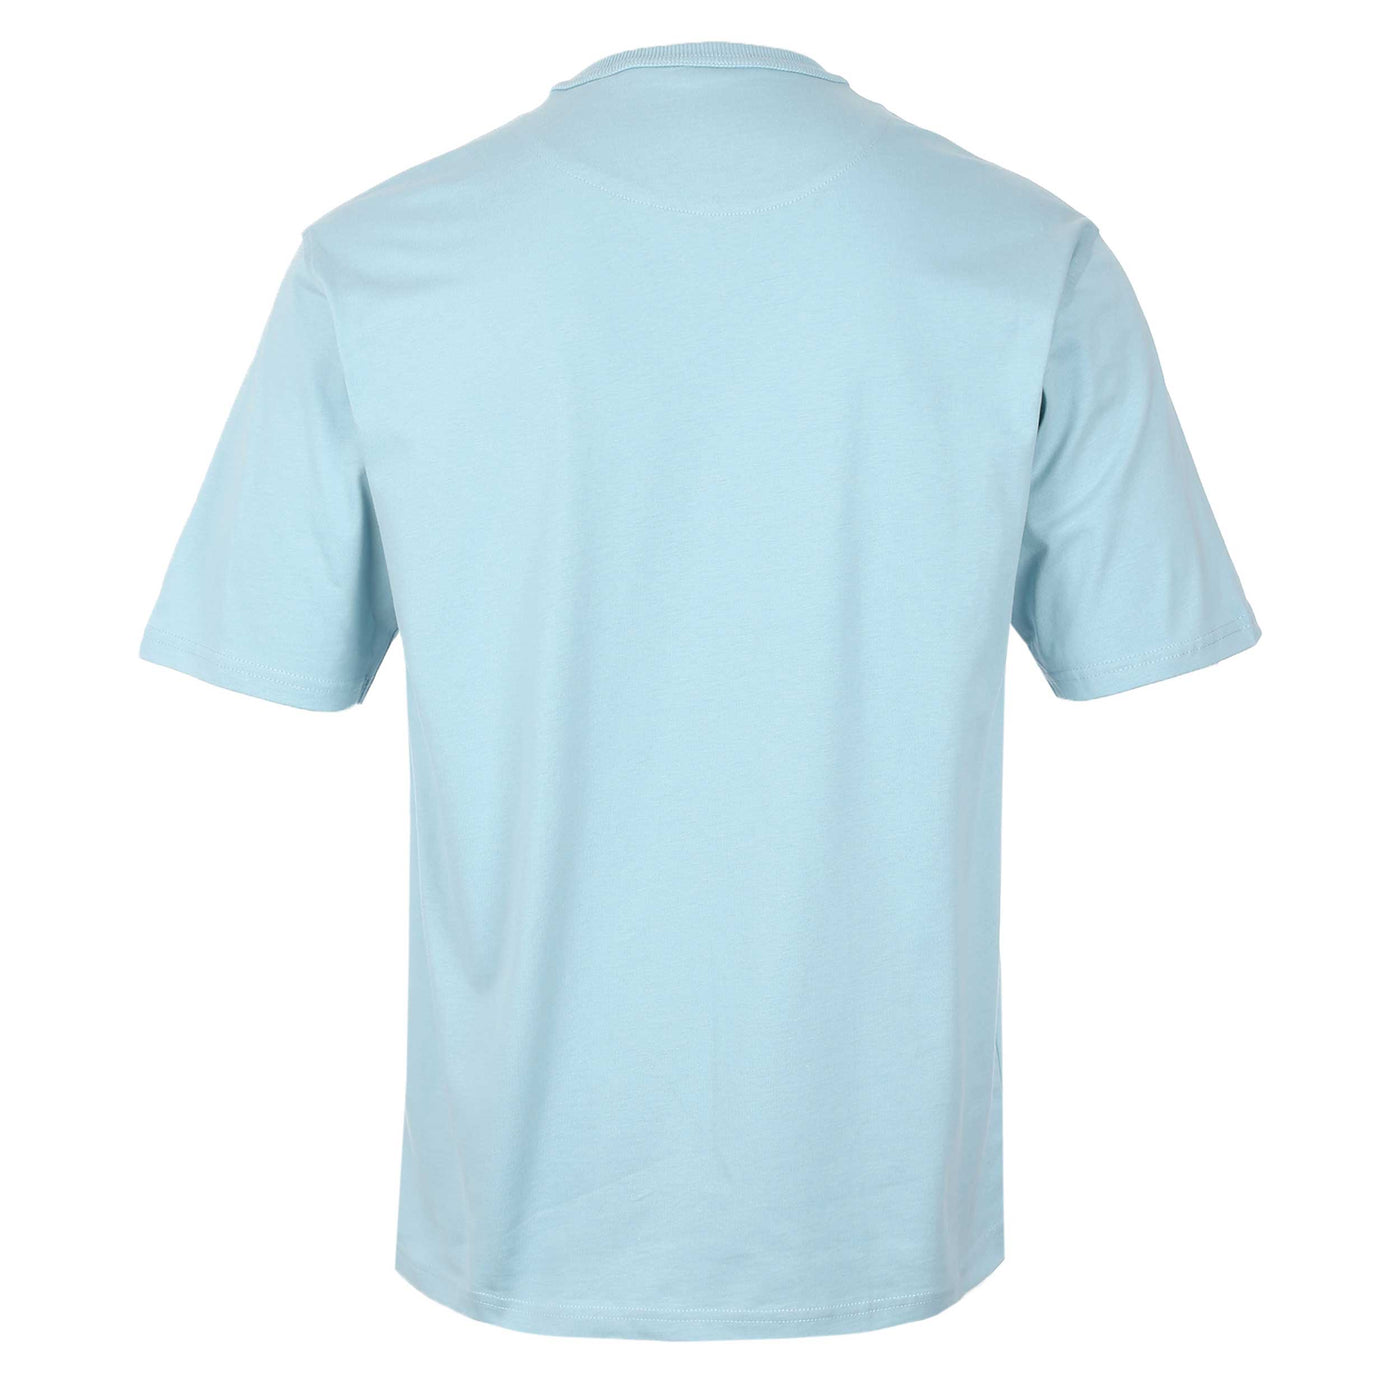 Belstaff Hex Phoenix T-Shirt in Skyline Blue Back